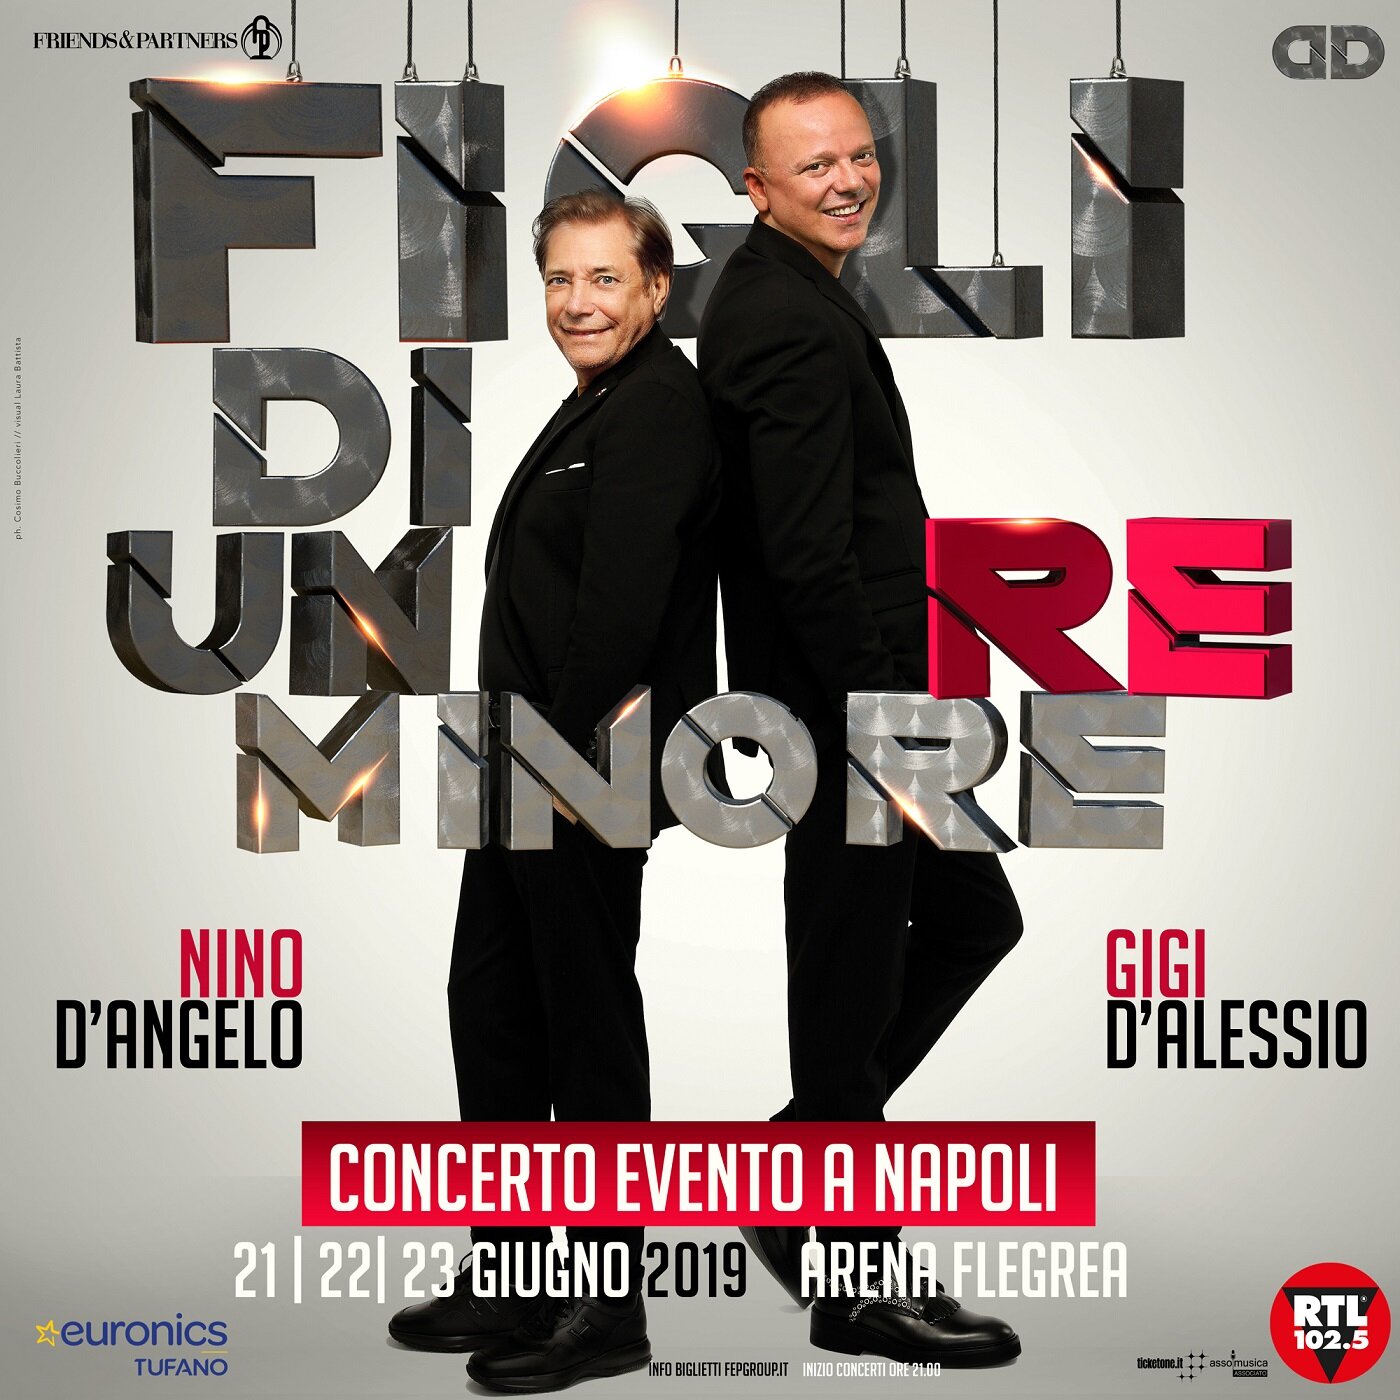 Nino D’Angelo e Gigi D’Alessio all’Arena Flegrea in ‘Figli di un re minore’. A giugno il concerto